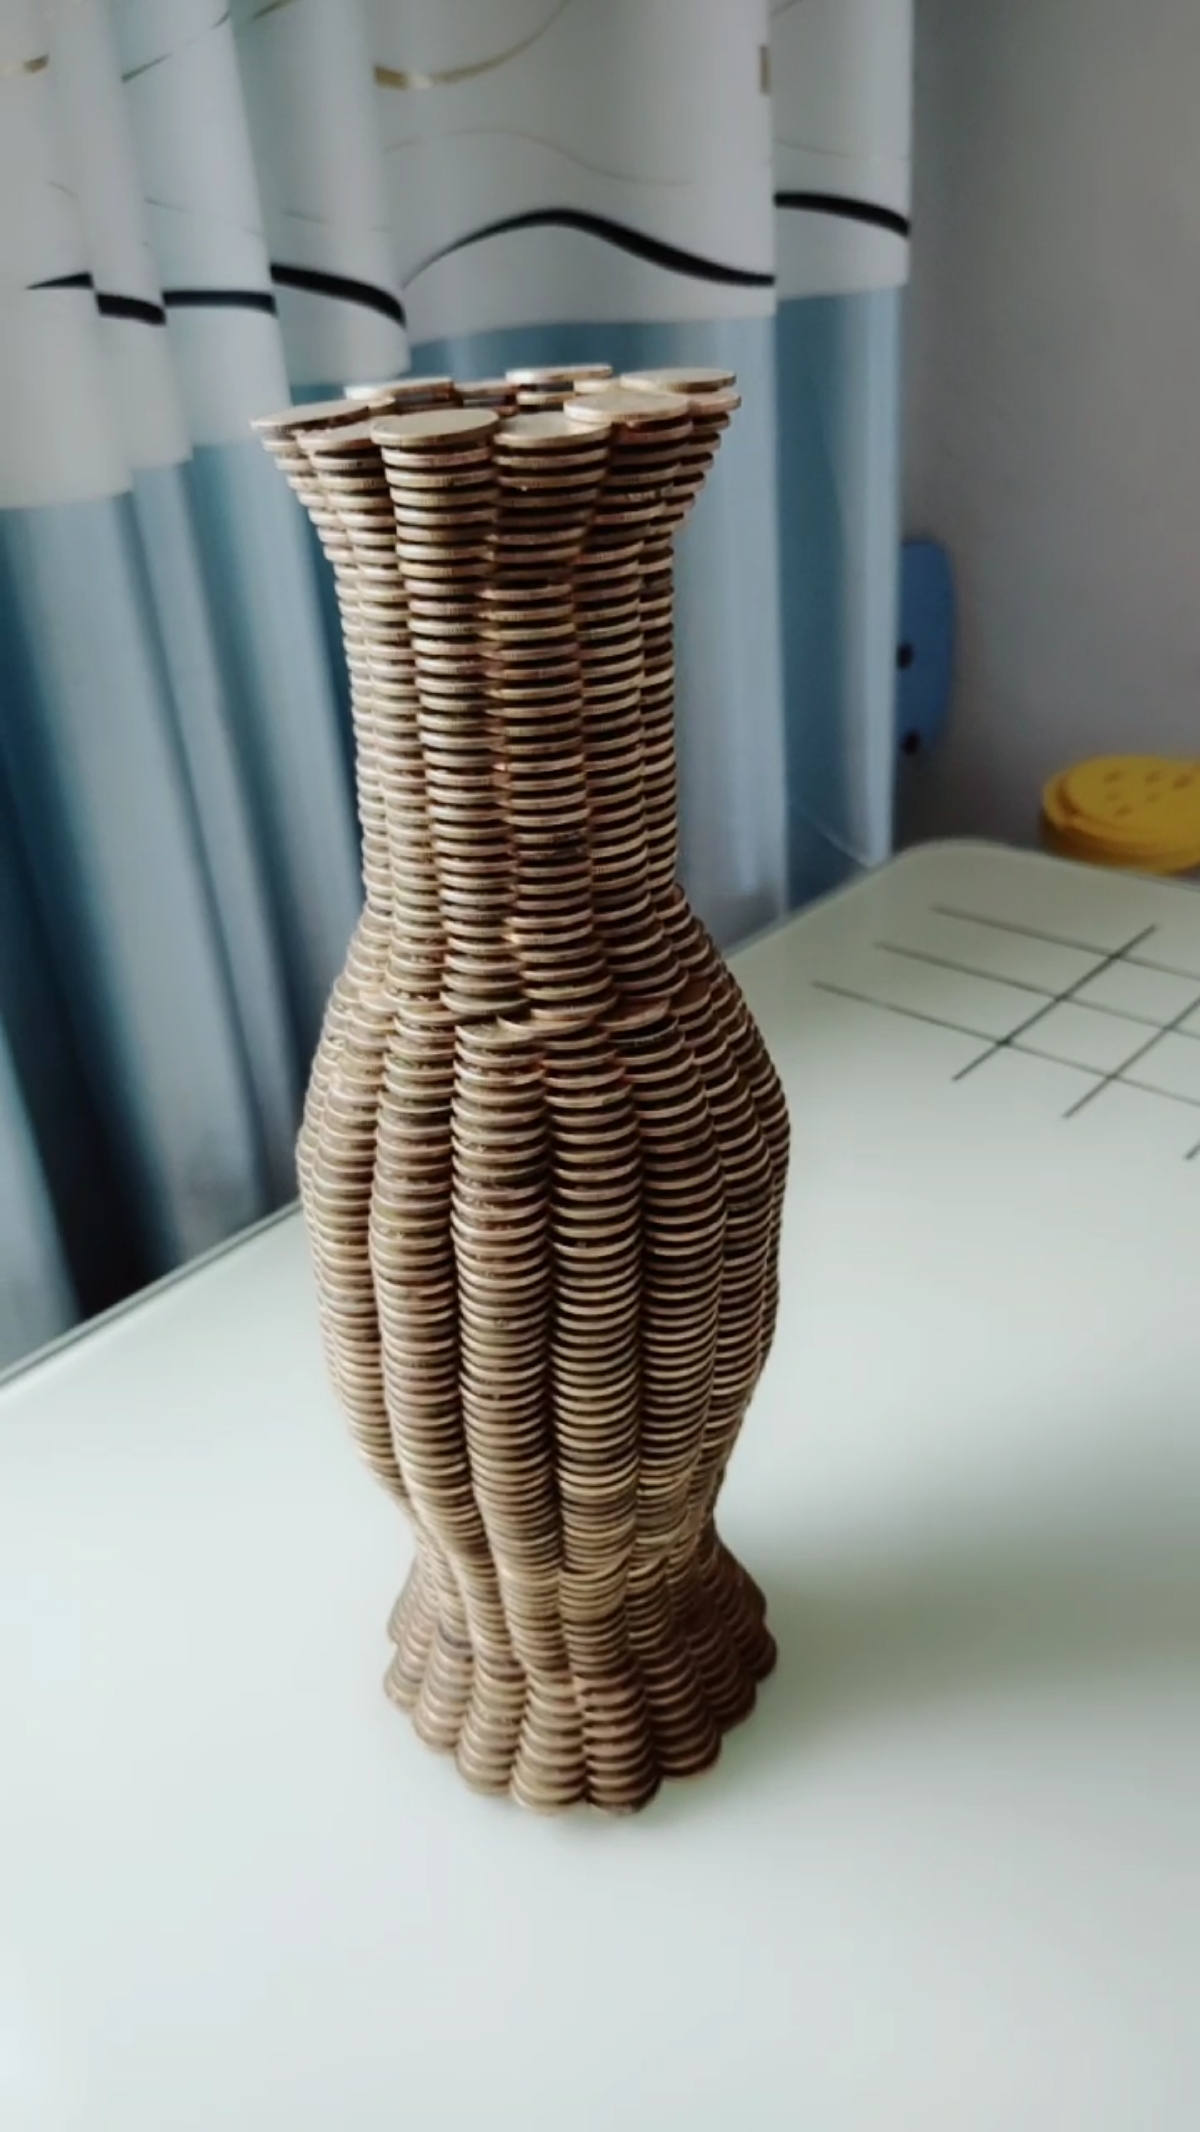 设计师怎么想的这花瓶造型